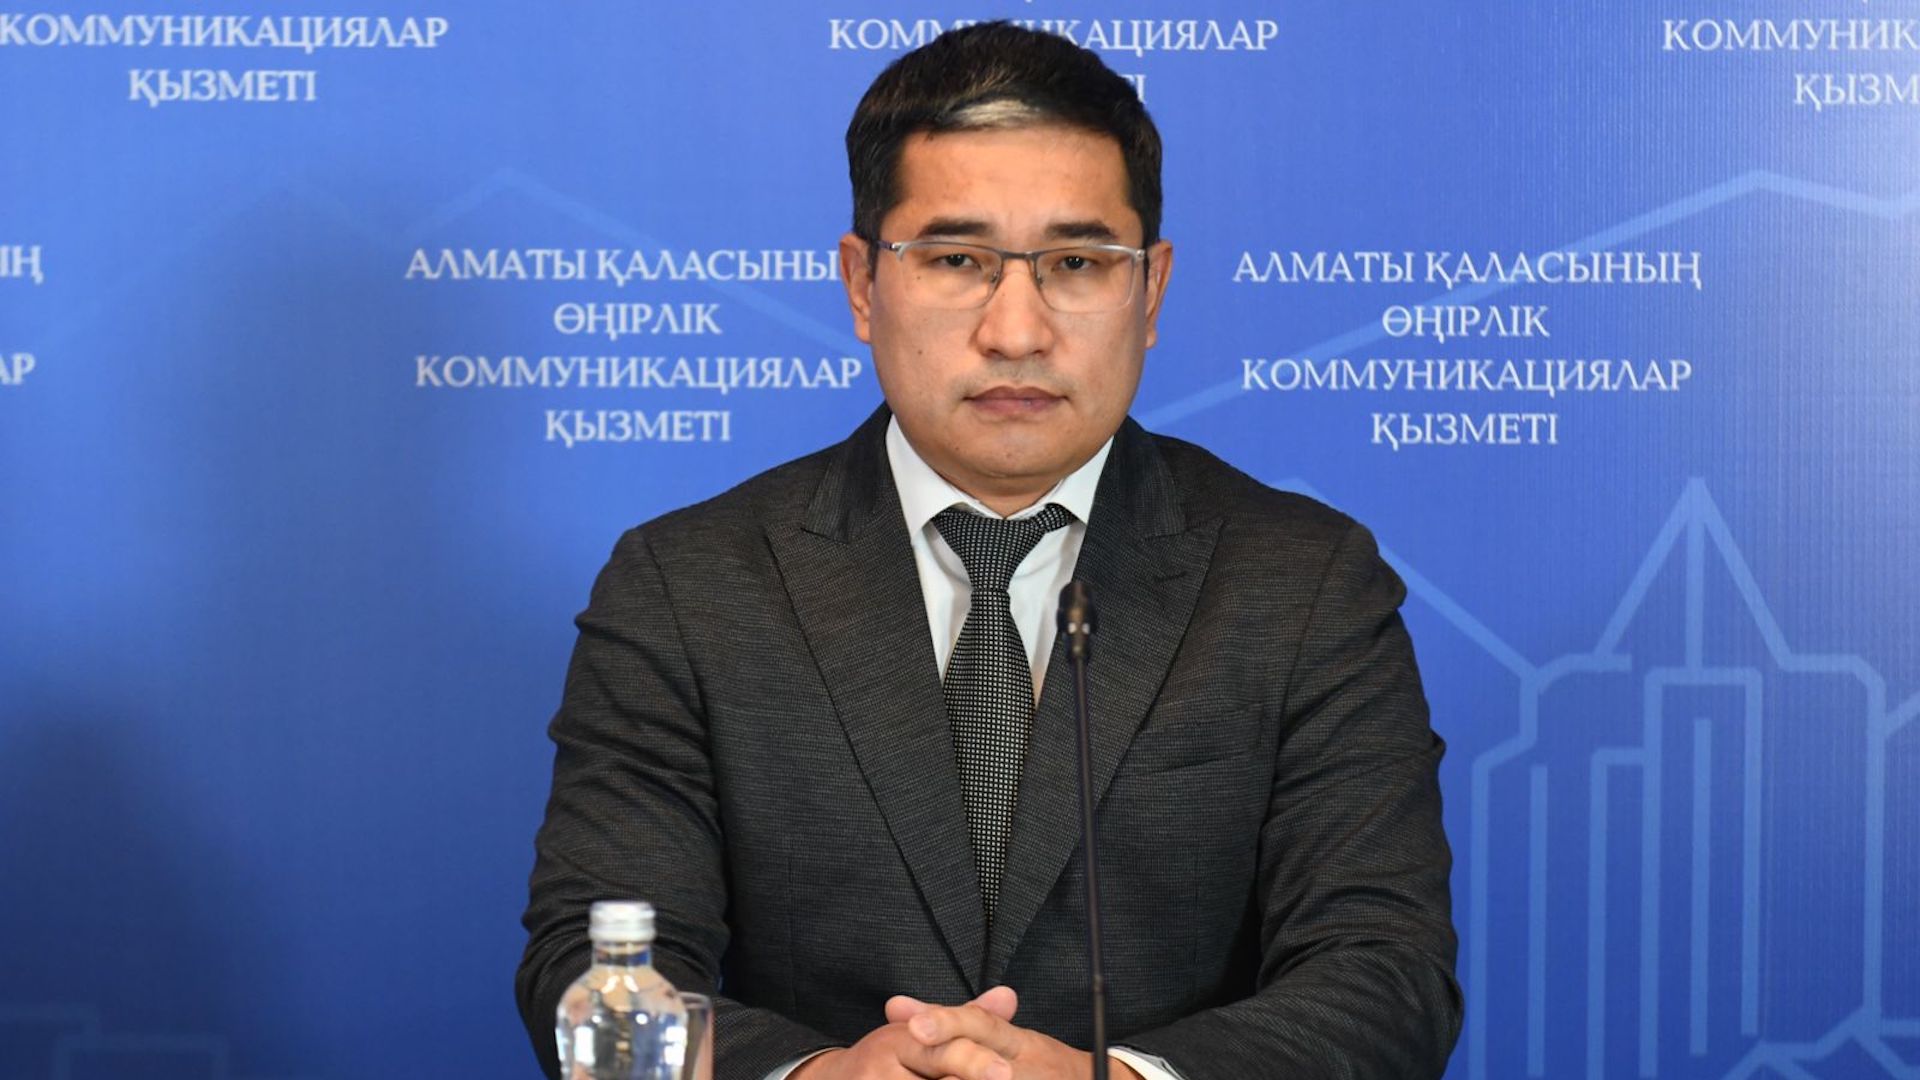 Нарушения на сумму 20,4 млн тенге среди работодателей выявили инспекторы труда в Алматы